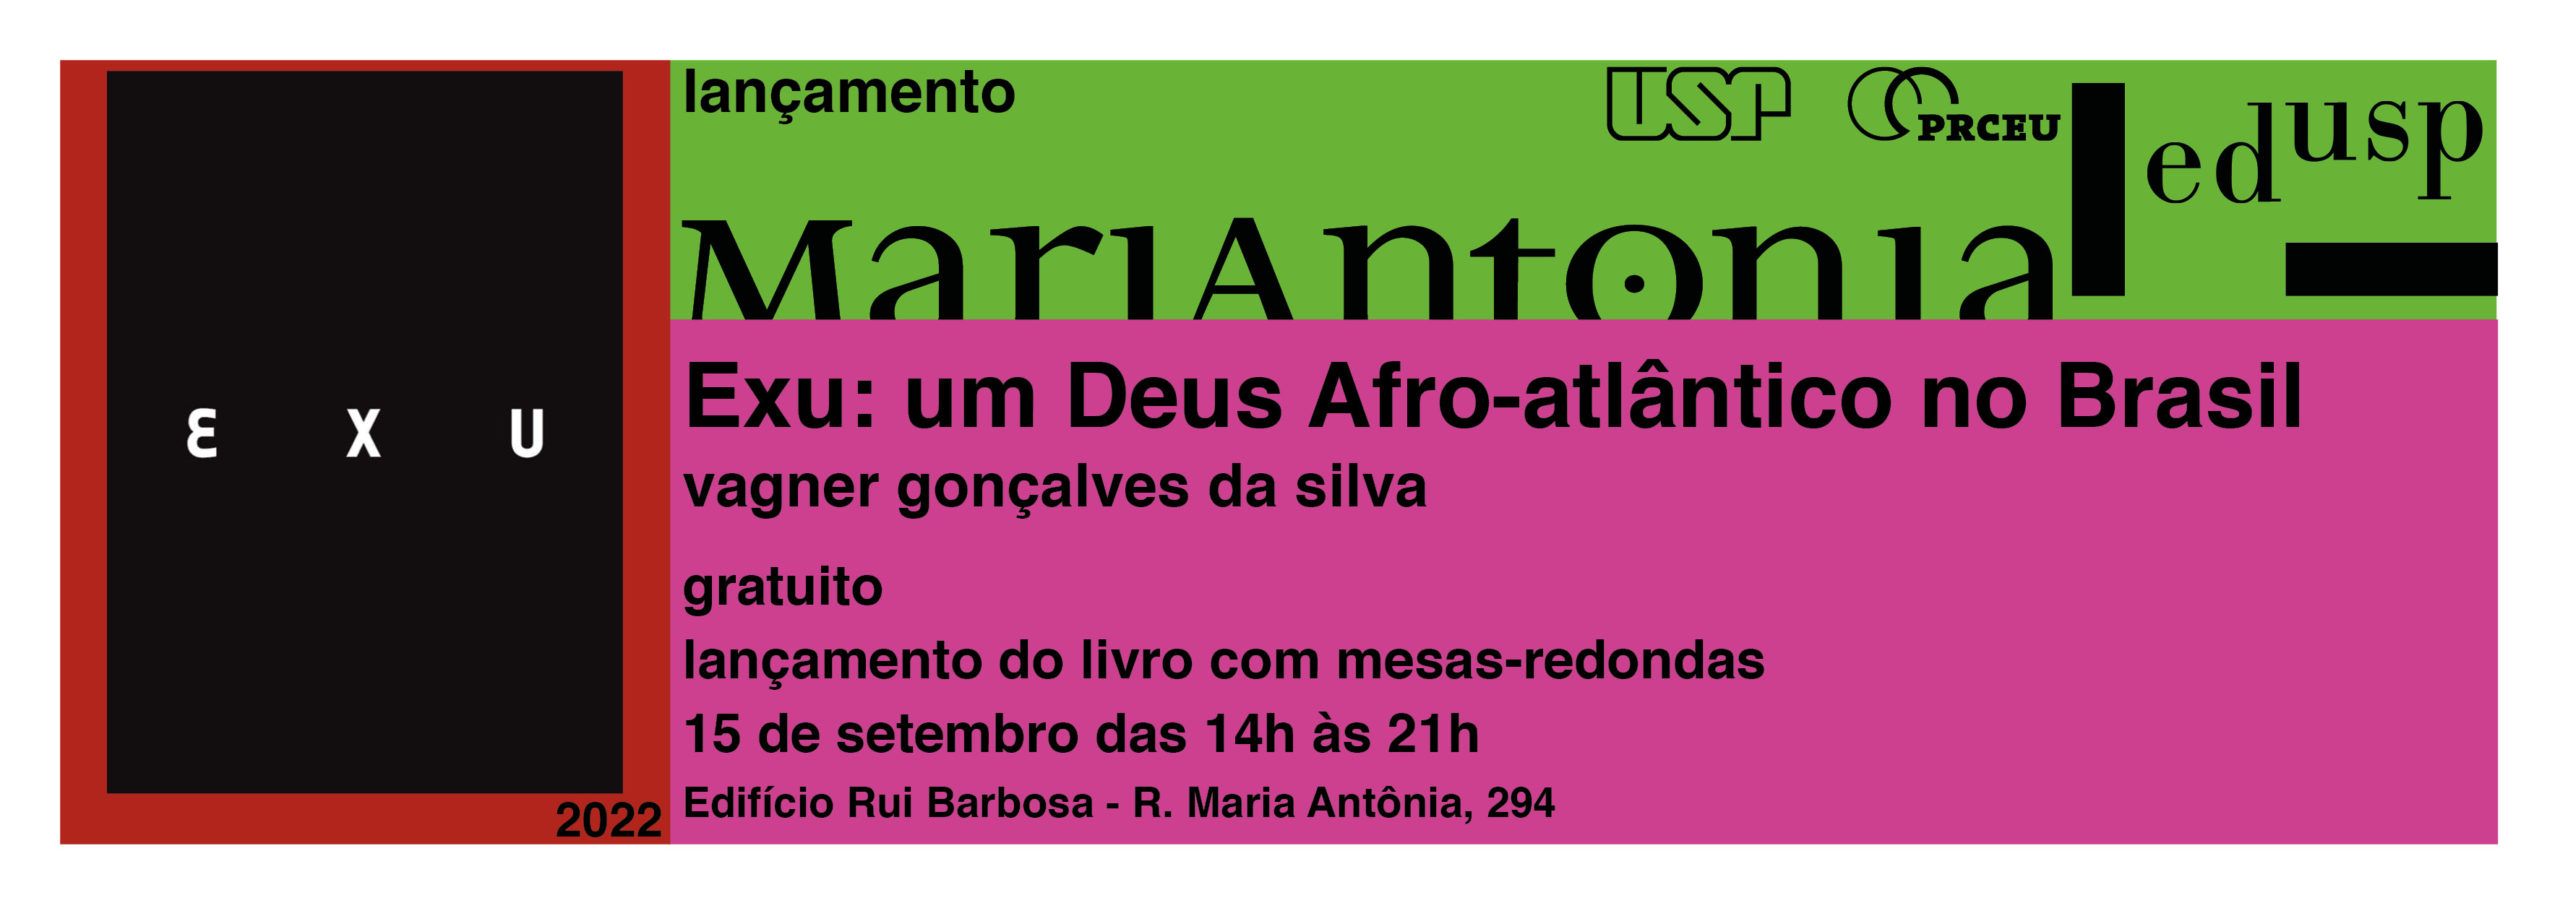 Lançamento do livro “Exu: um deus afro-atlântico no Brasil”